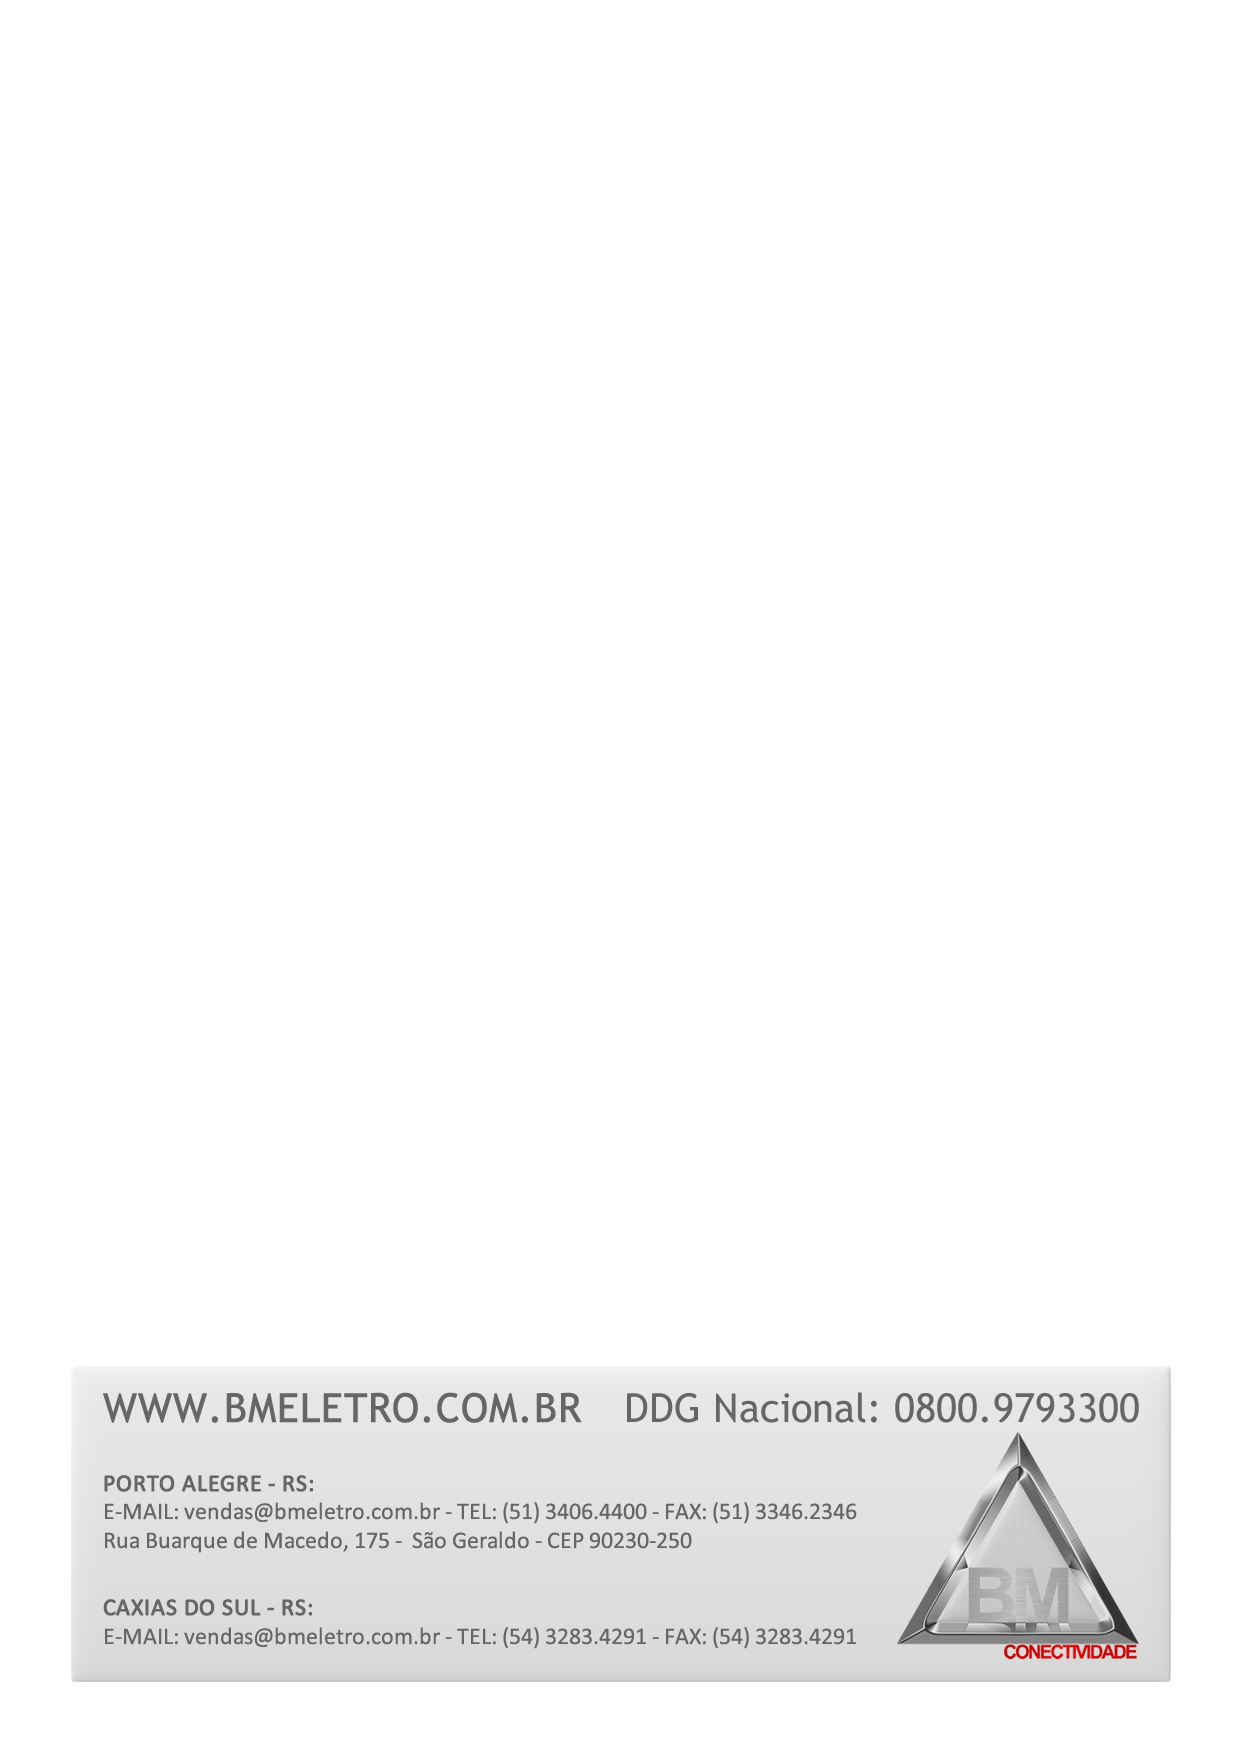 WWW.BMELETRO.COM.BR DDG Nacional: 0800.9793300 PORTO ALEGRE - RS: E-MAIL: vendas@bmeletro.com.br - TEL: (51) 3406.4400 - FAX: (51) 3346.